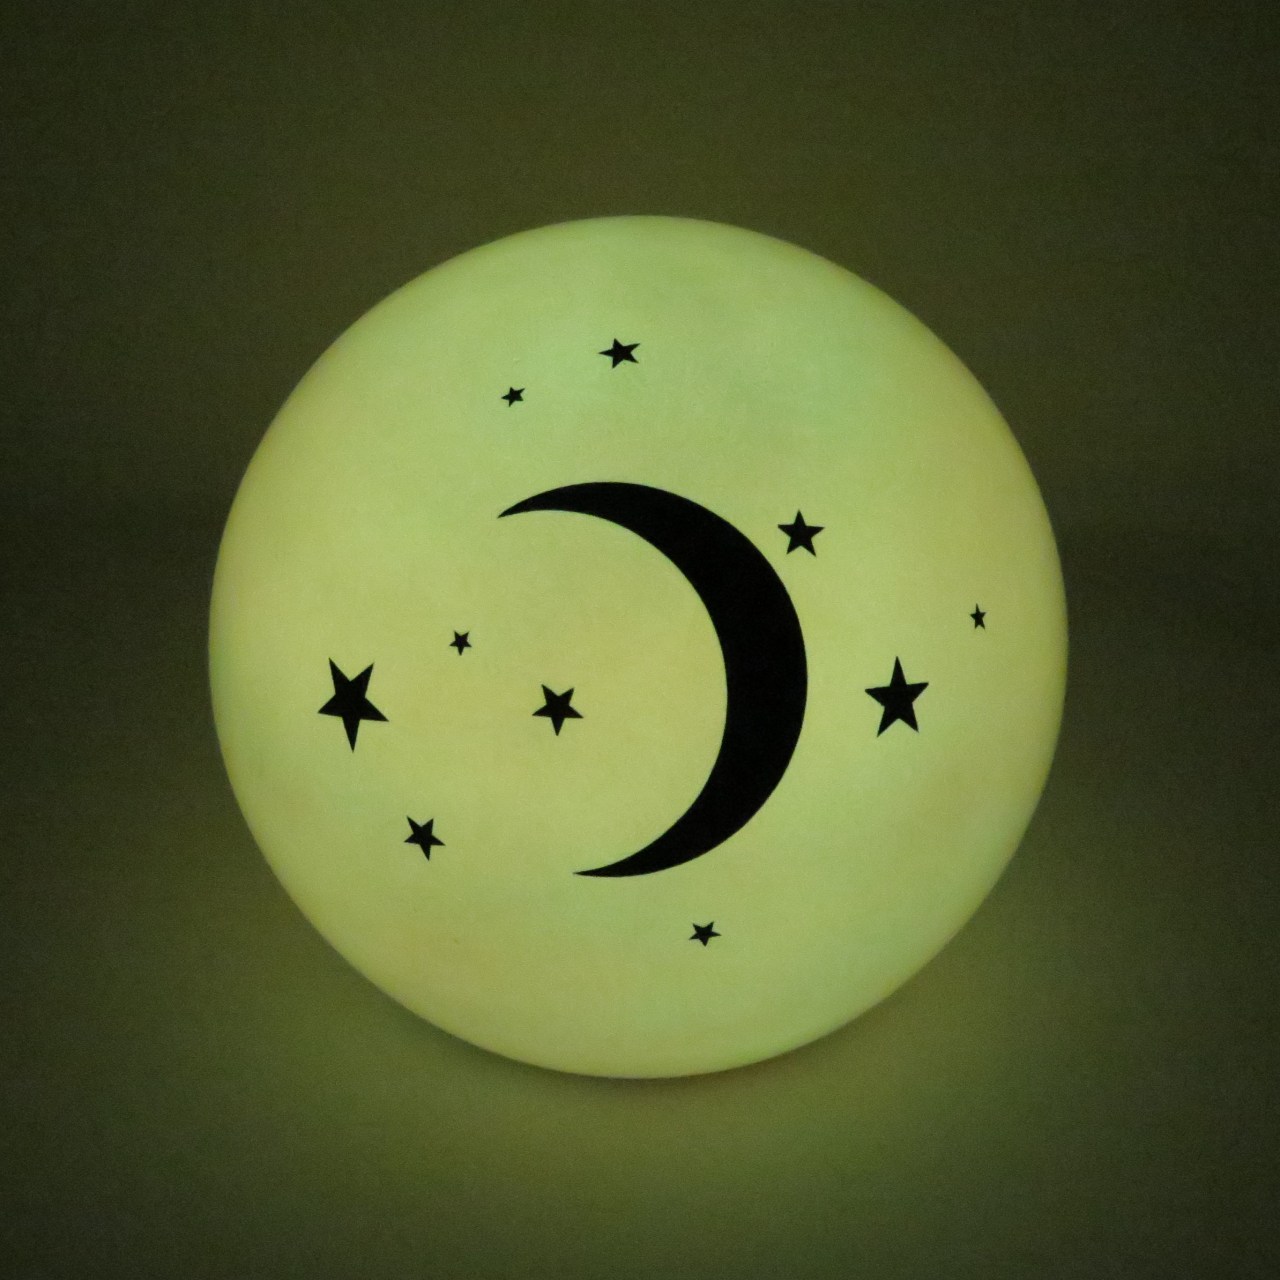 Tierurne Kugel Good-Night leuchtet im dunkeln-Mond & Sterne